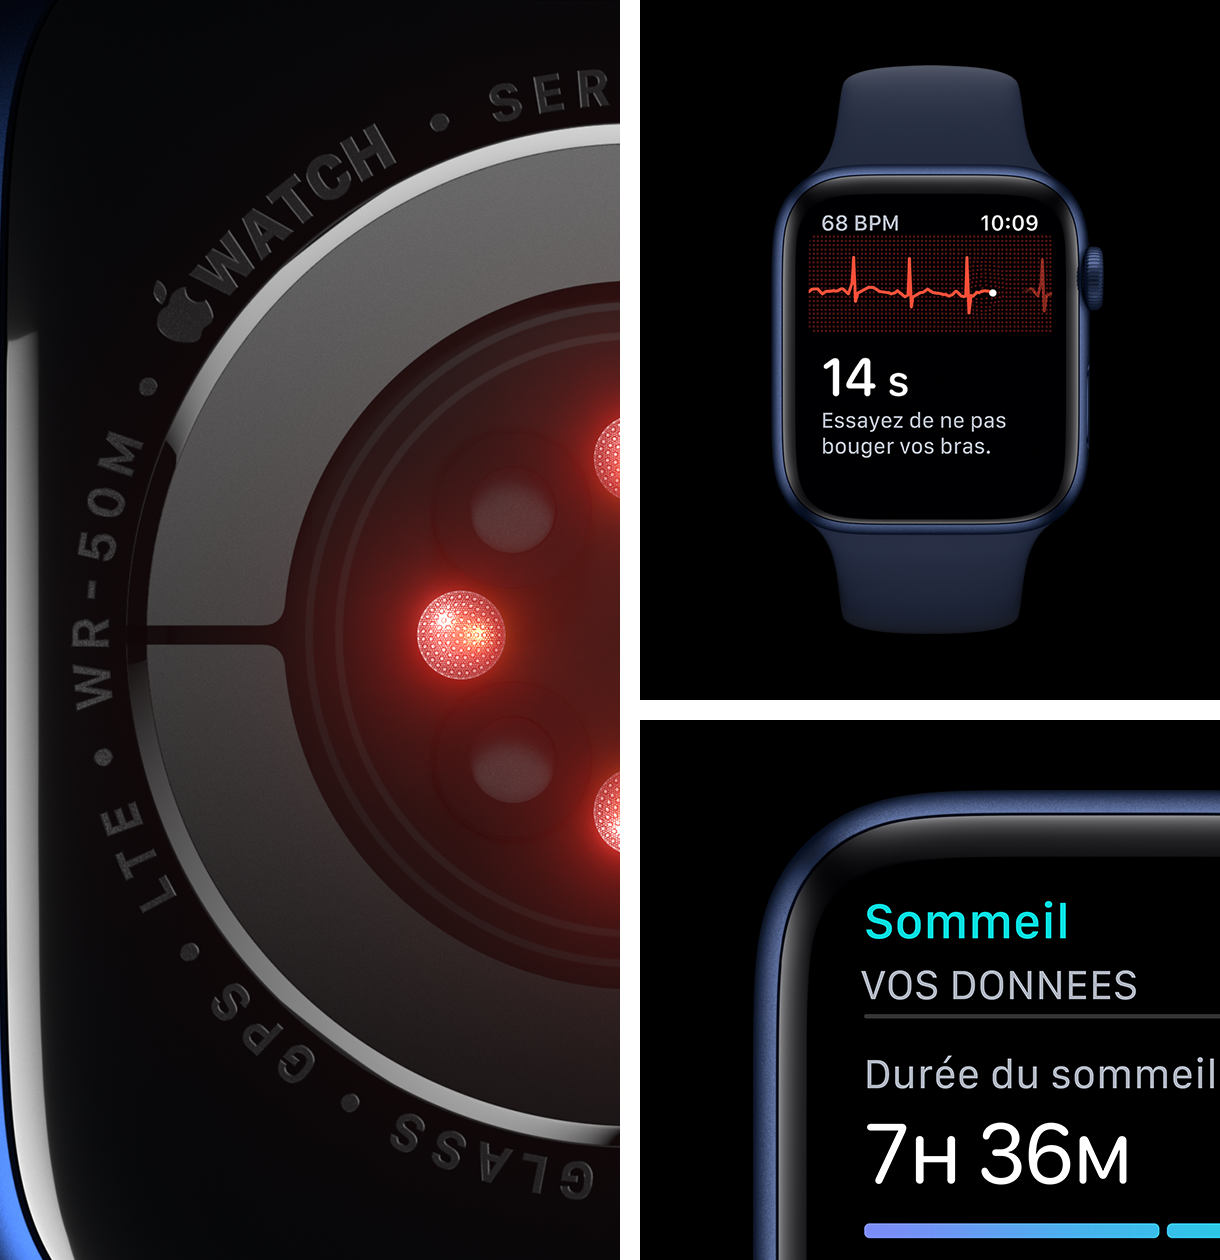 Apple Watch Series 6 vous aide à mesurer votre oxygène sanguin, votre pouls et la qualité de votre sommeil.